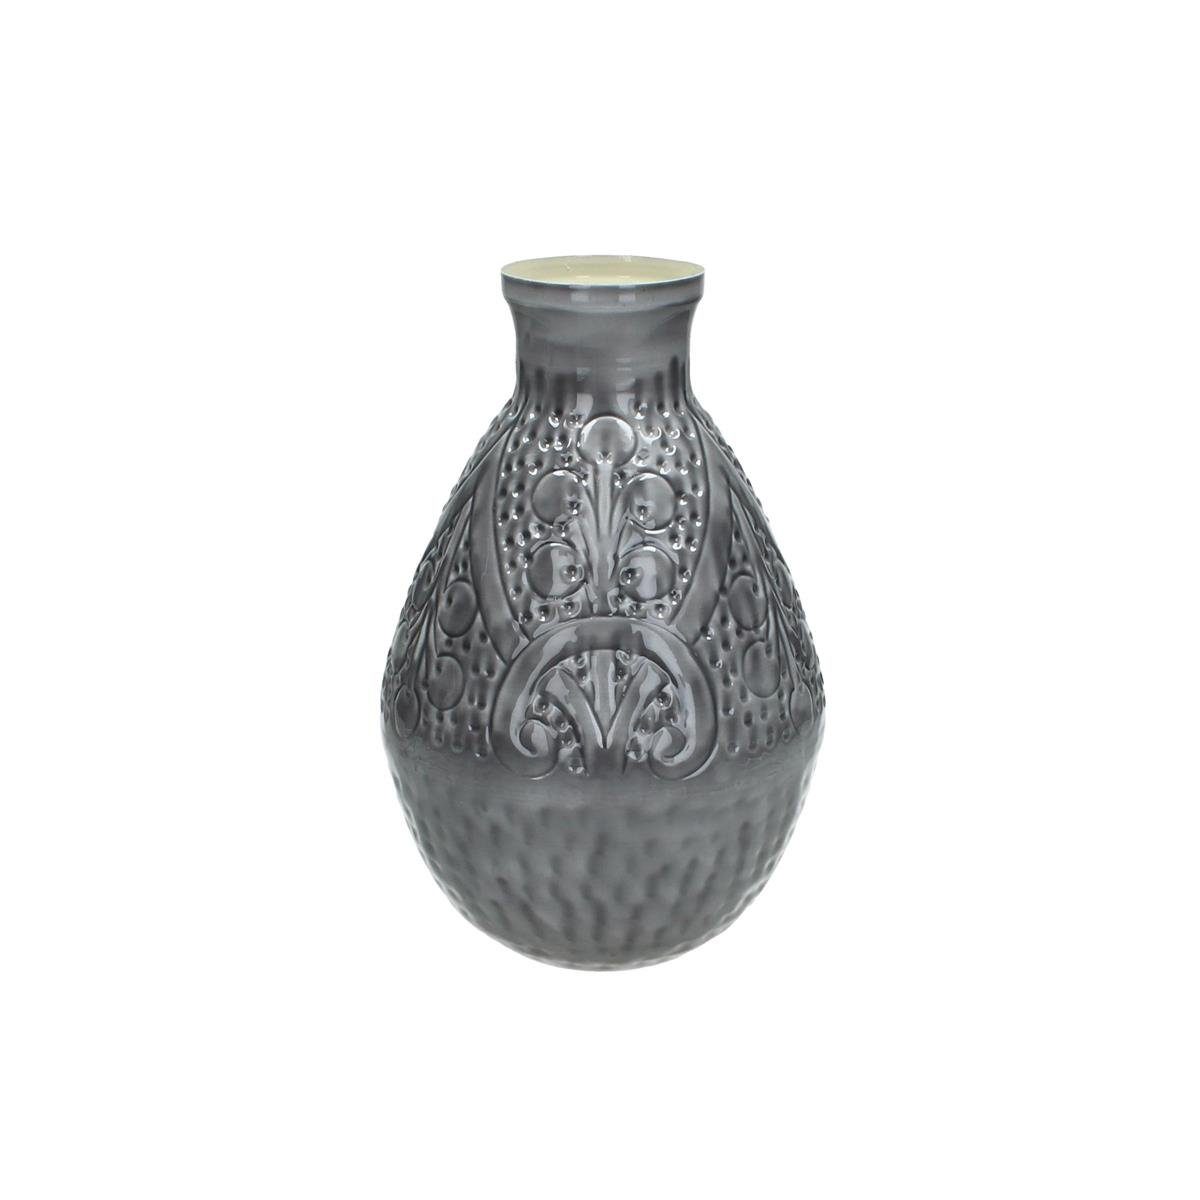 Metall Hochwertiger Vase Set, 20x20x31cm (kein Set) Grau Engelnburg 1er Engelnburg Dekovase